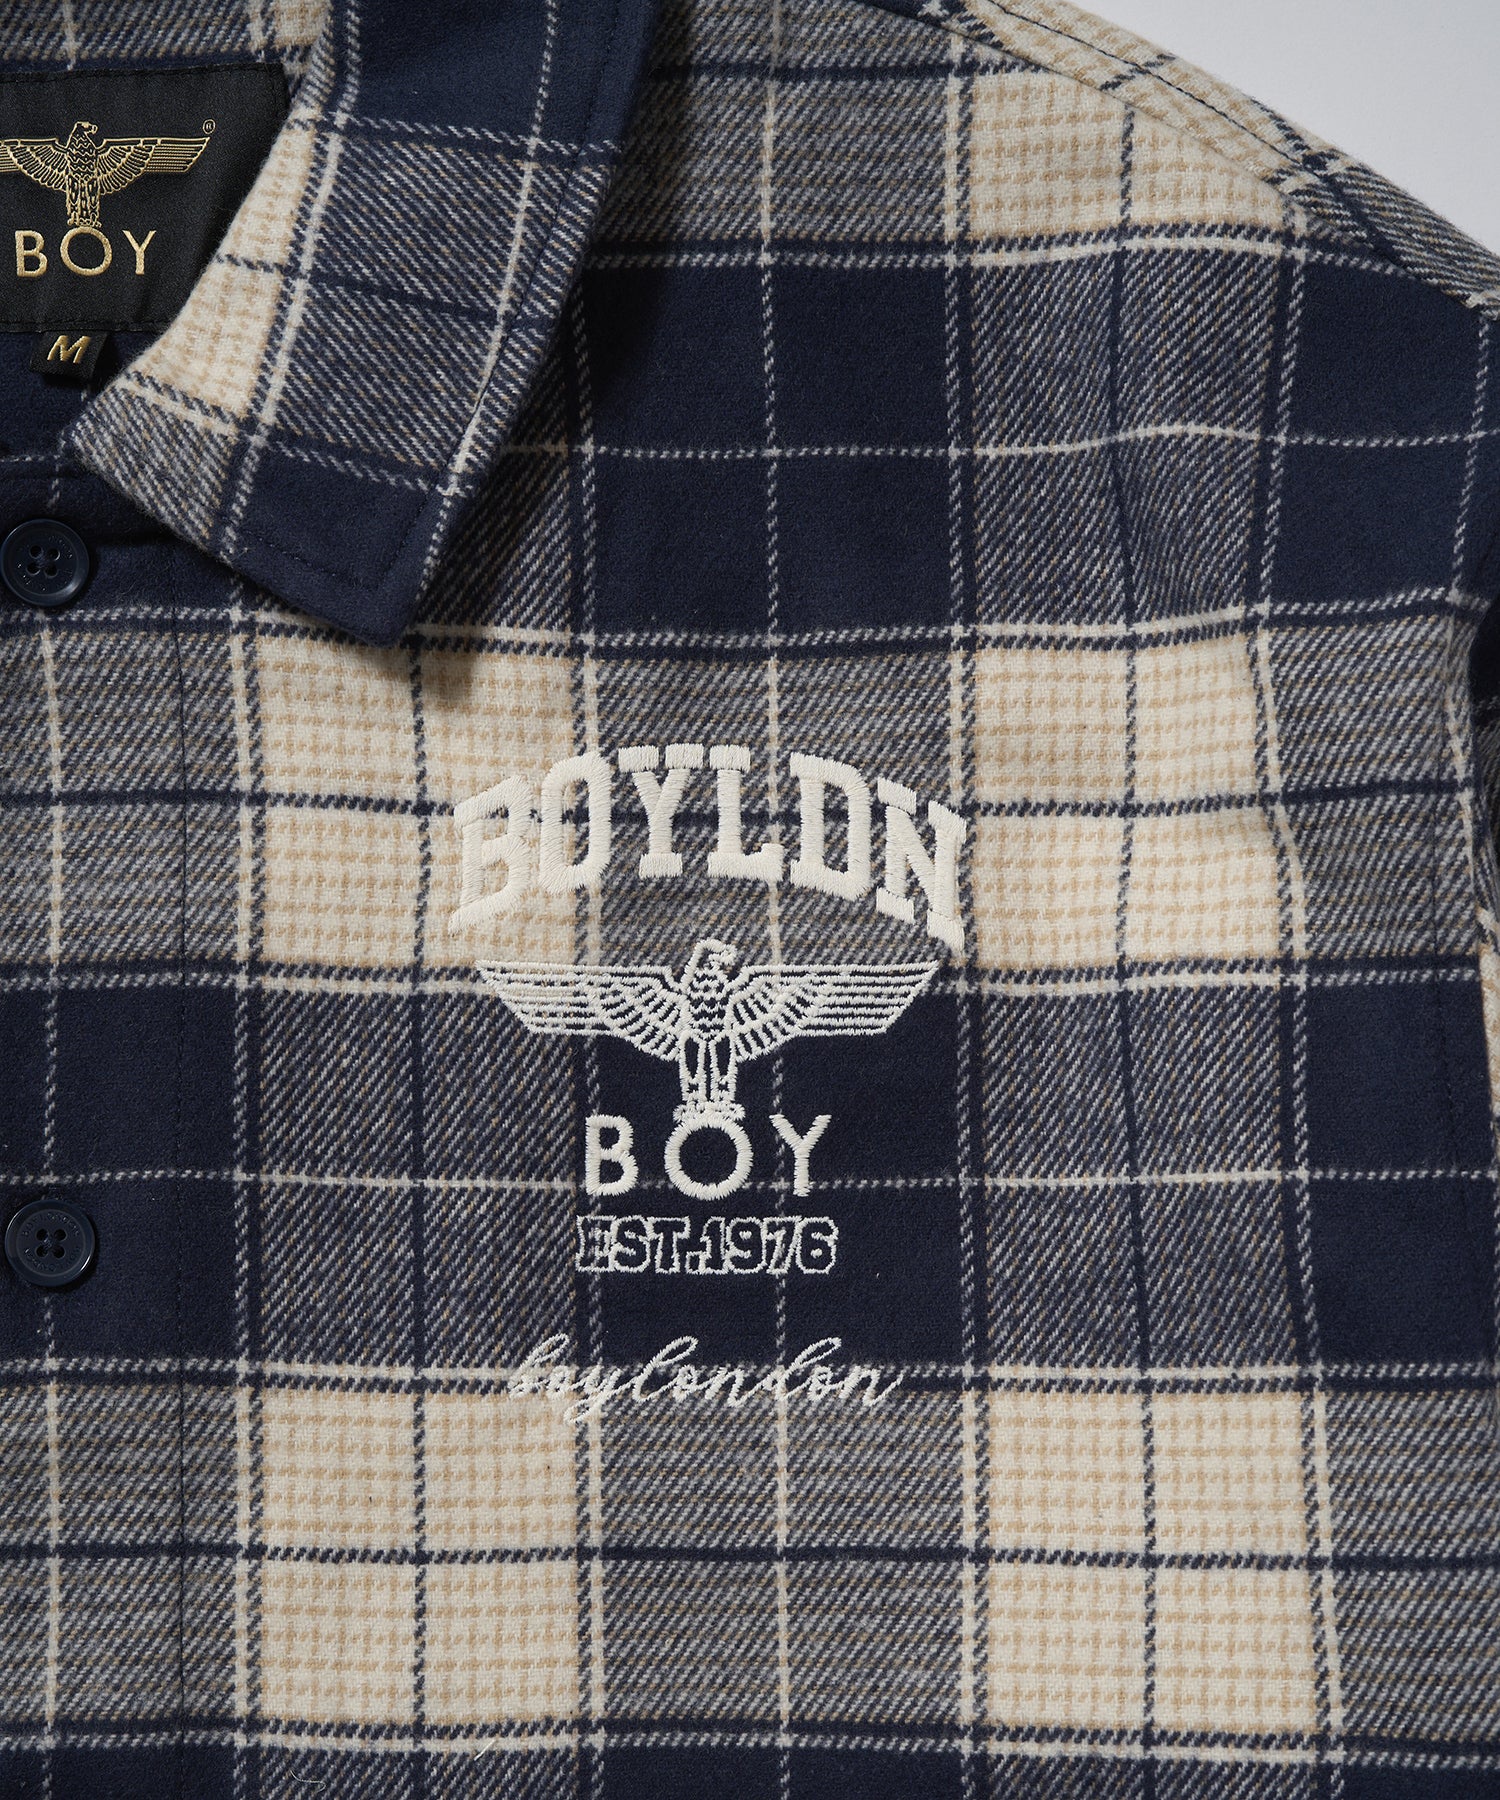 BOY LOGO Check Coveralls Shirt NAVY【B233N2302216】 – BOY LONDON